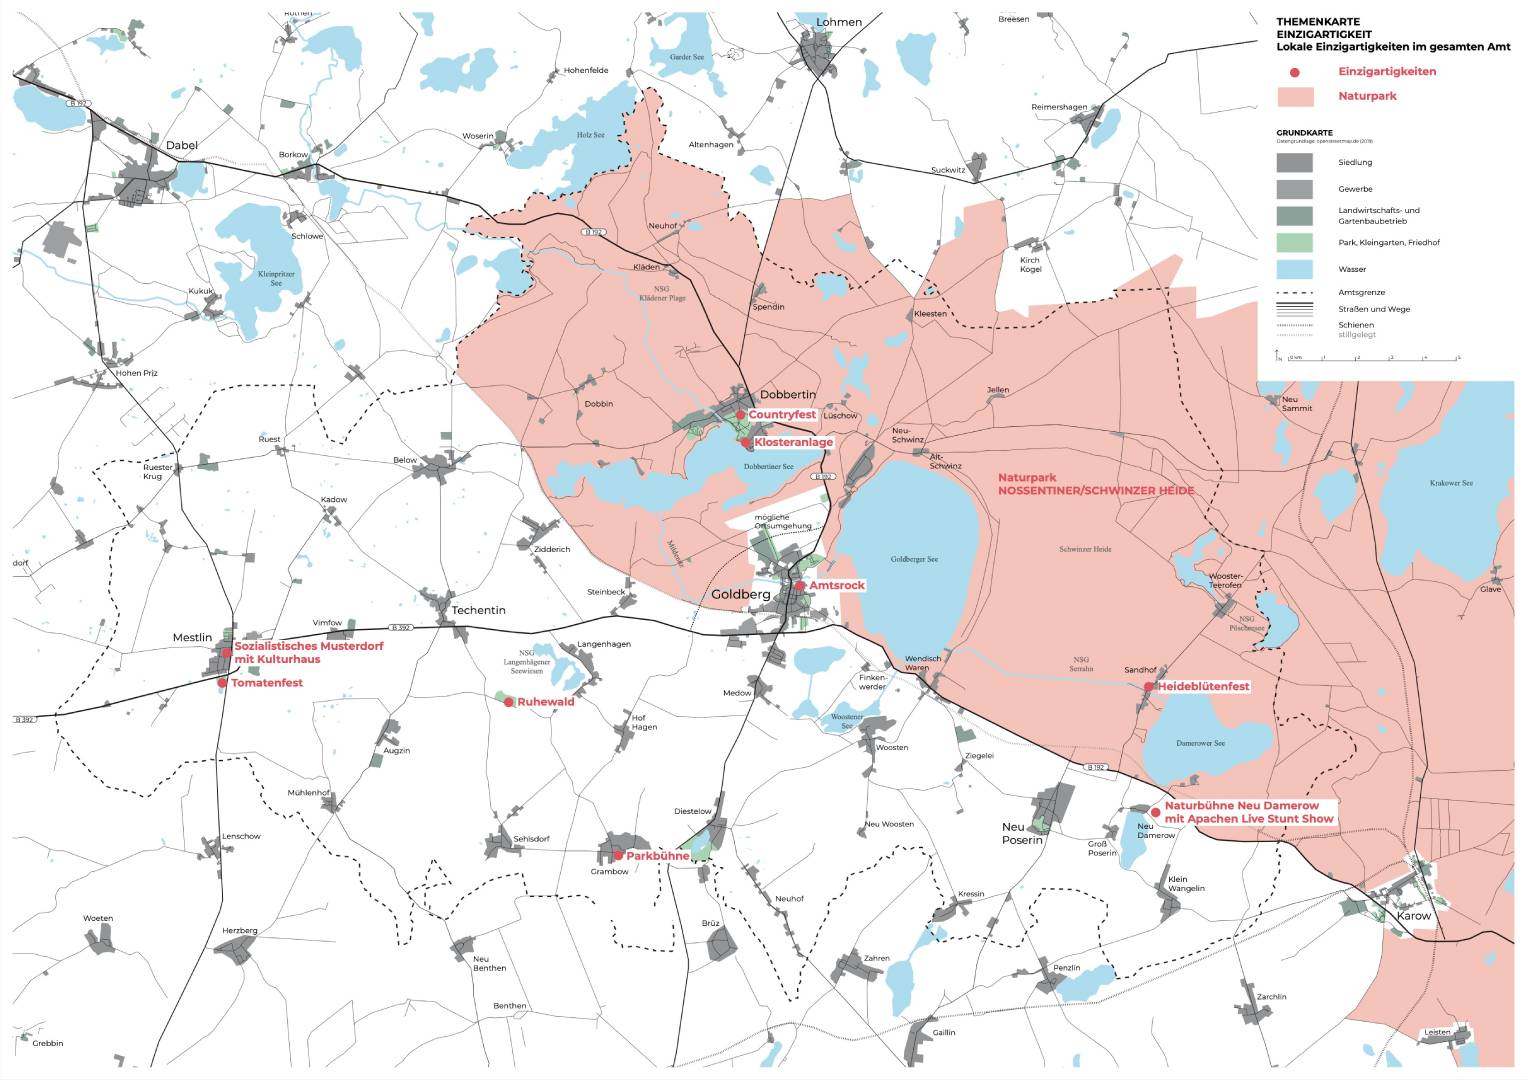 Landkarte mit namentlich benannten Einzigartigkeiten, Gebiet der Nossentiner/Schwinzer Heide ist rot gekennzeichnet